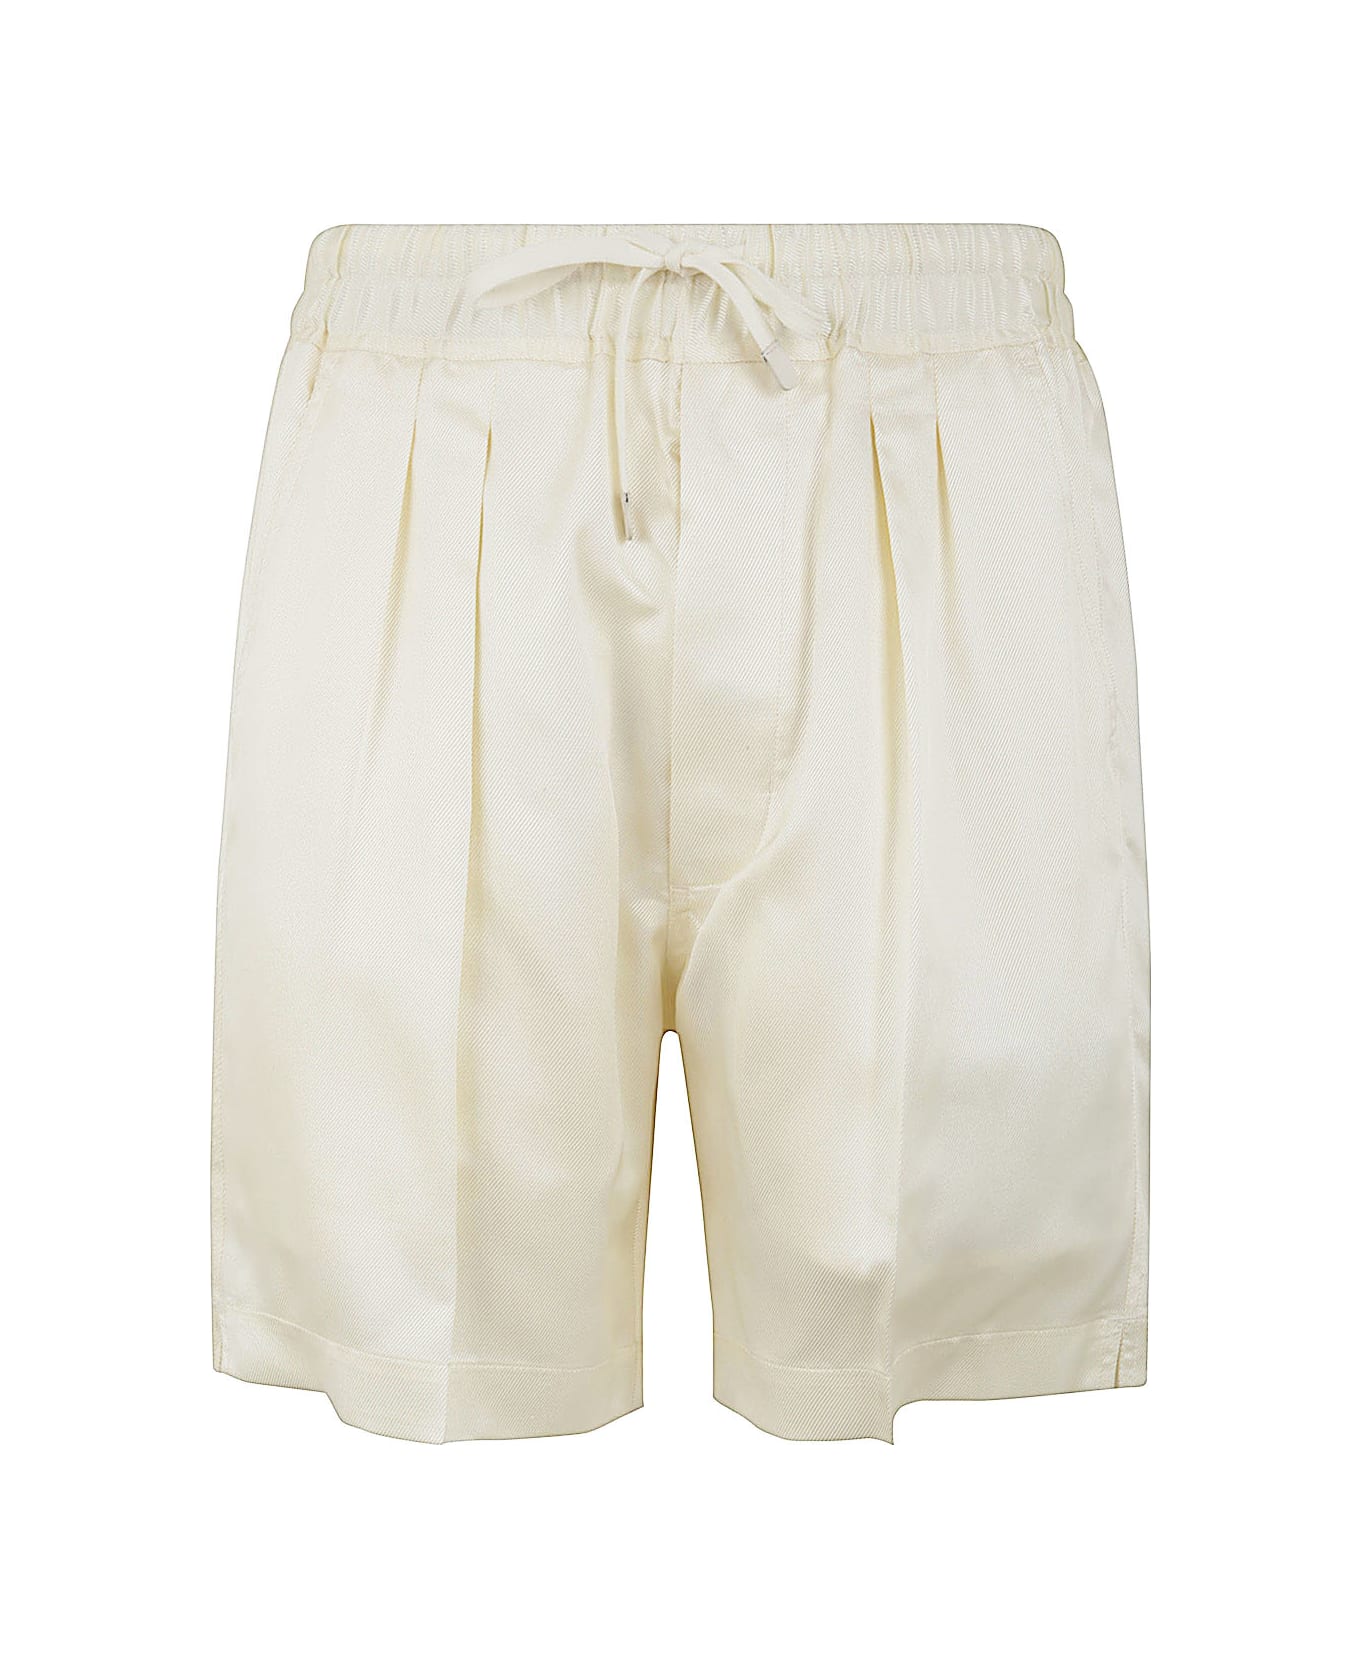 Tom Ford Shorts - Off White ショートパンツ